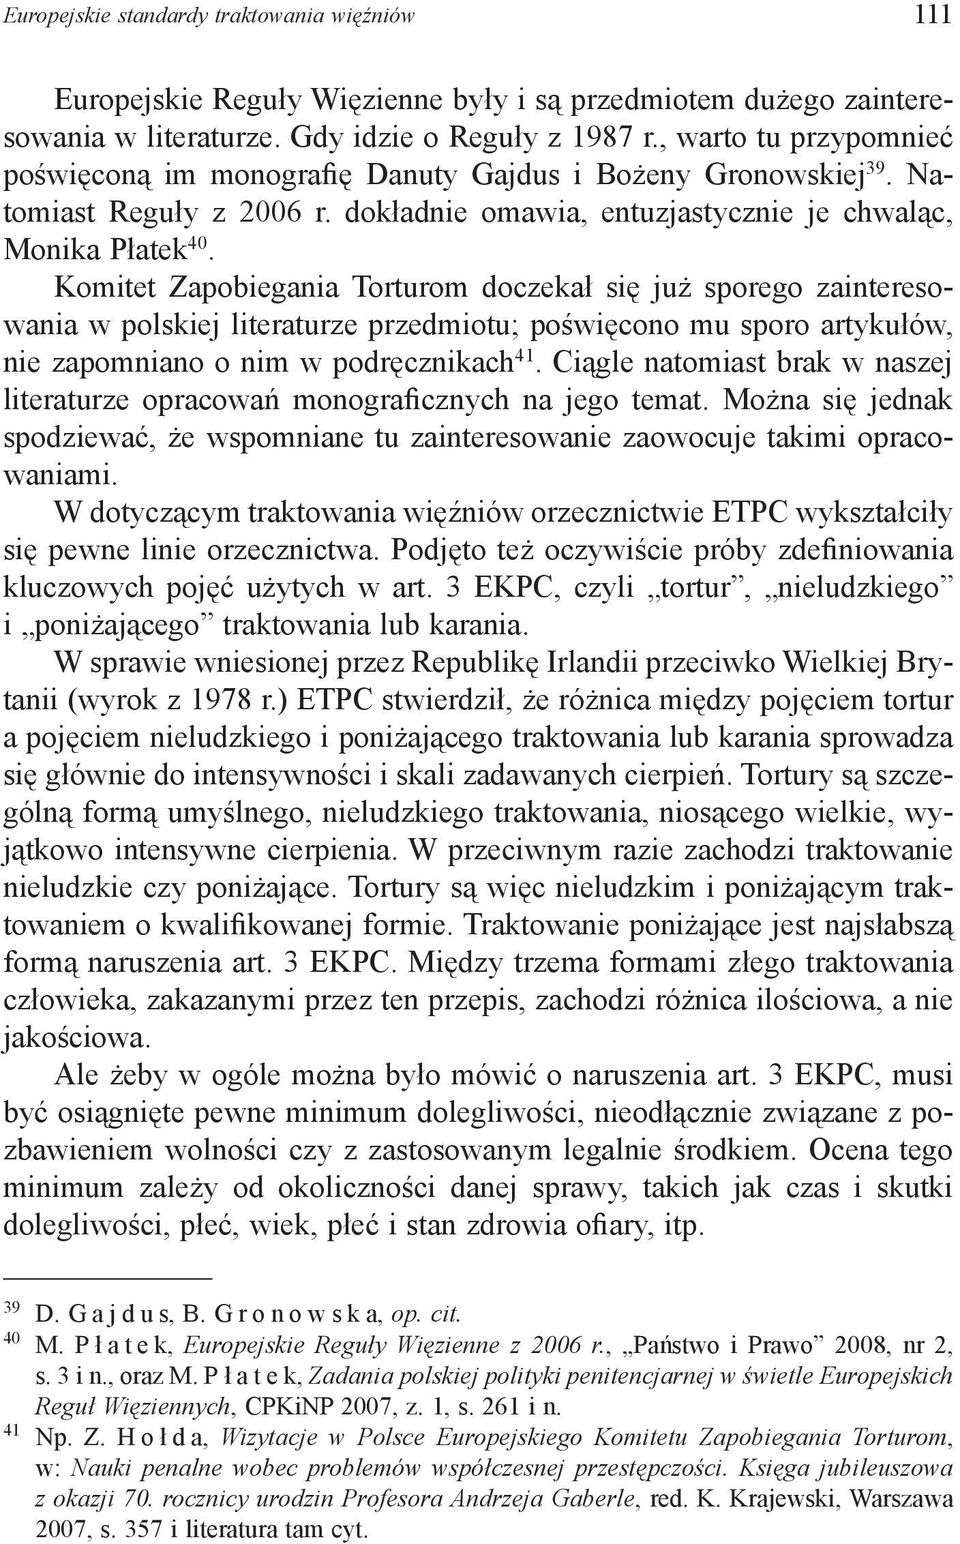 Komitet Zapobiegania Torturom doczekał się już sporego zainteresowania w polskiej literaturze przedmiotu; poświęcono mu sporo artykułów, nie zapomniano o nim w podręcznikach 41.